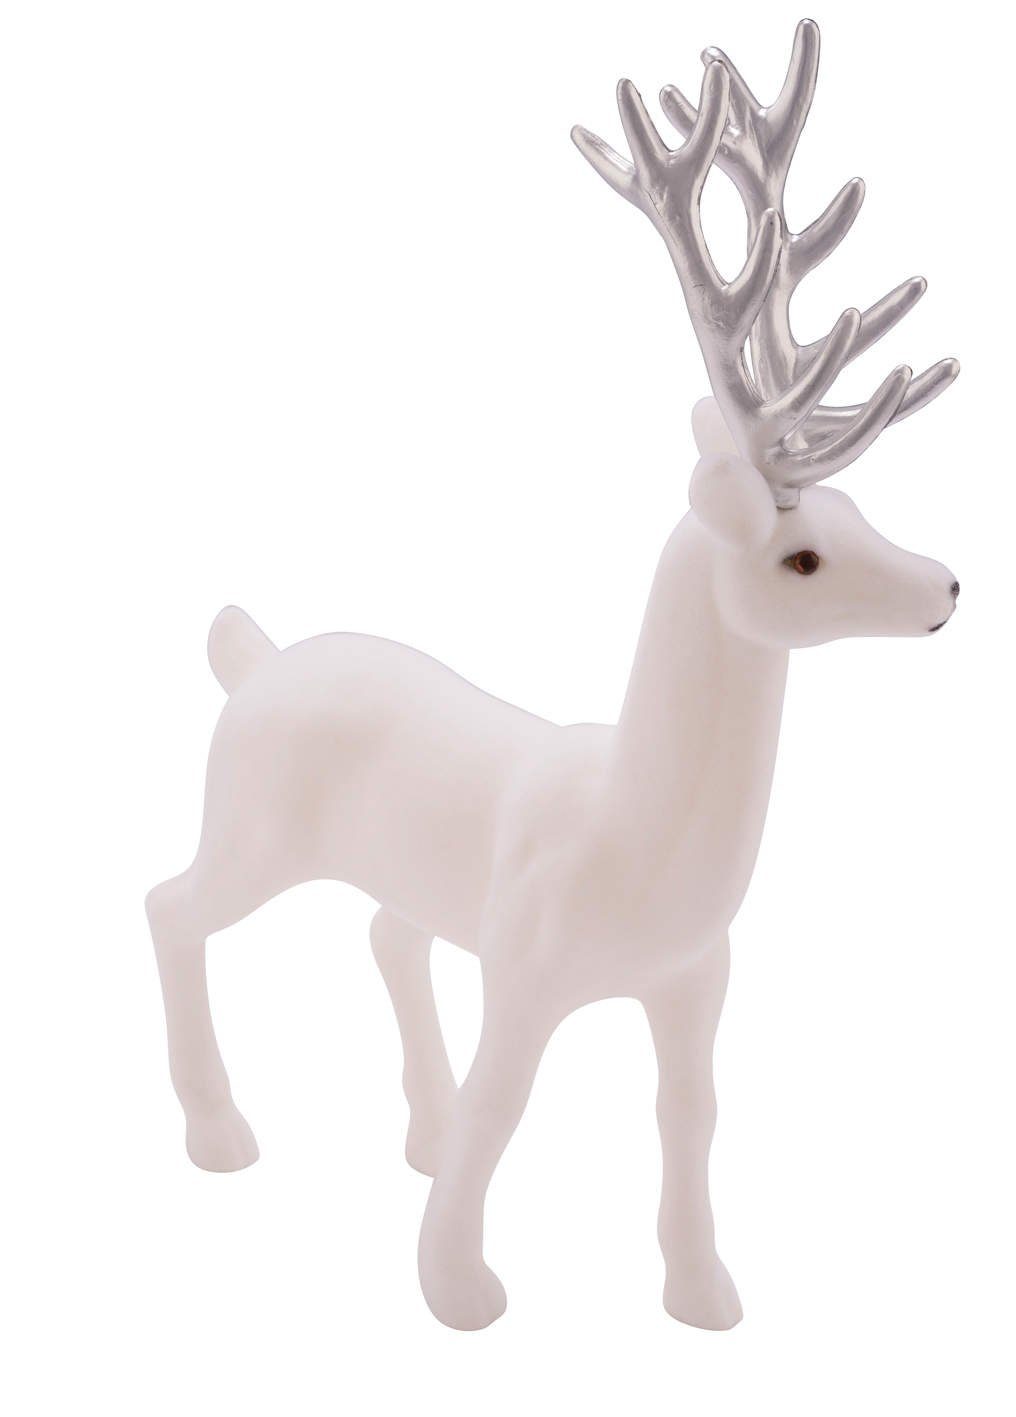 Gehlmann Weihnachtsfigur Hirsch, Samt, verschiedene Farben und Größen erhältlich weiß-silber